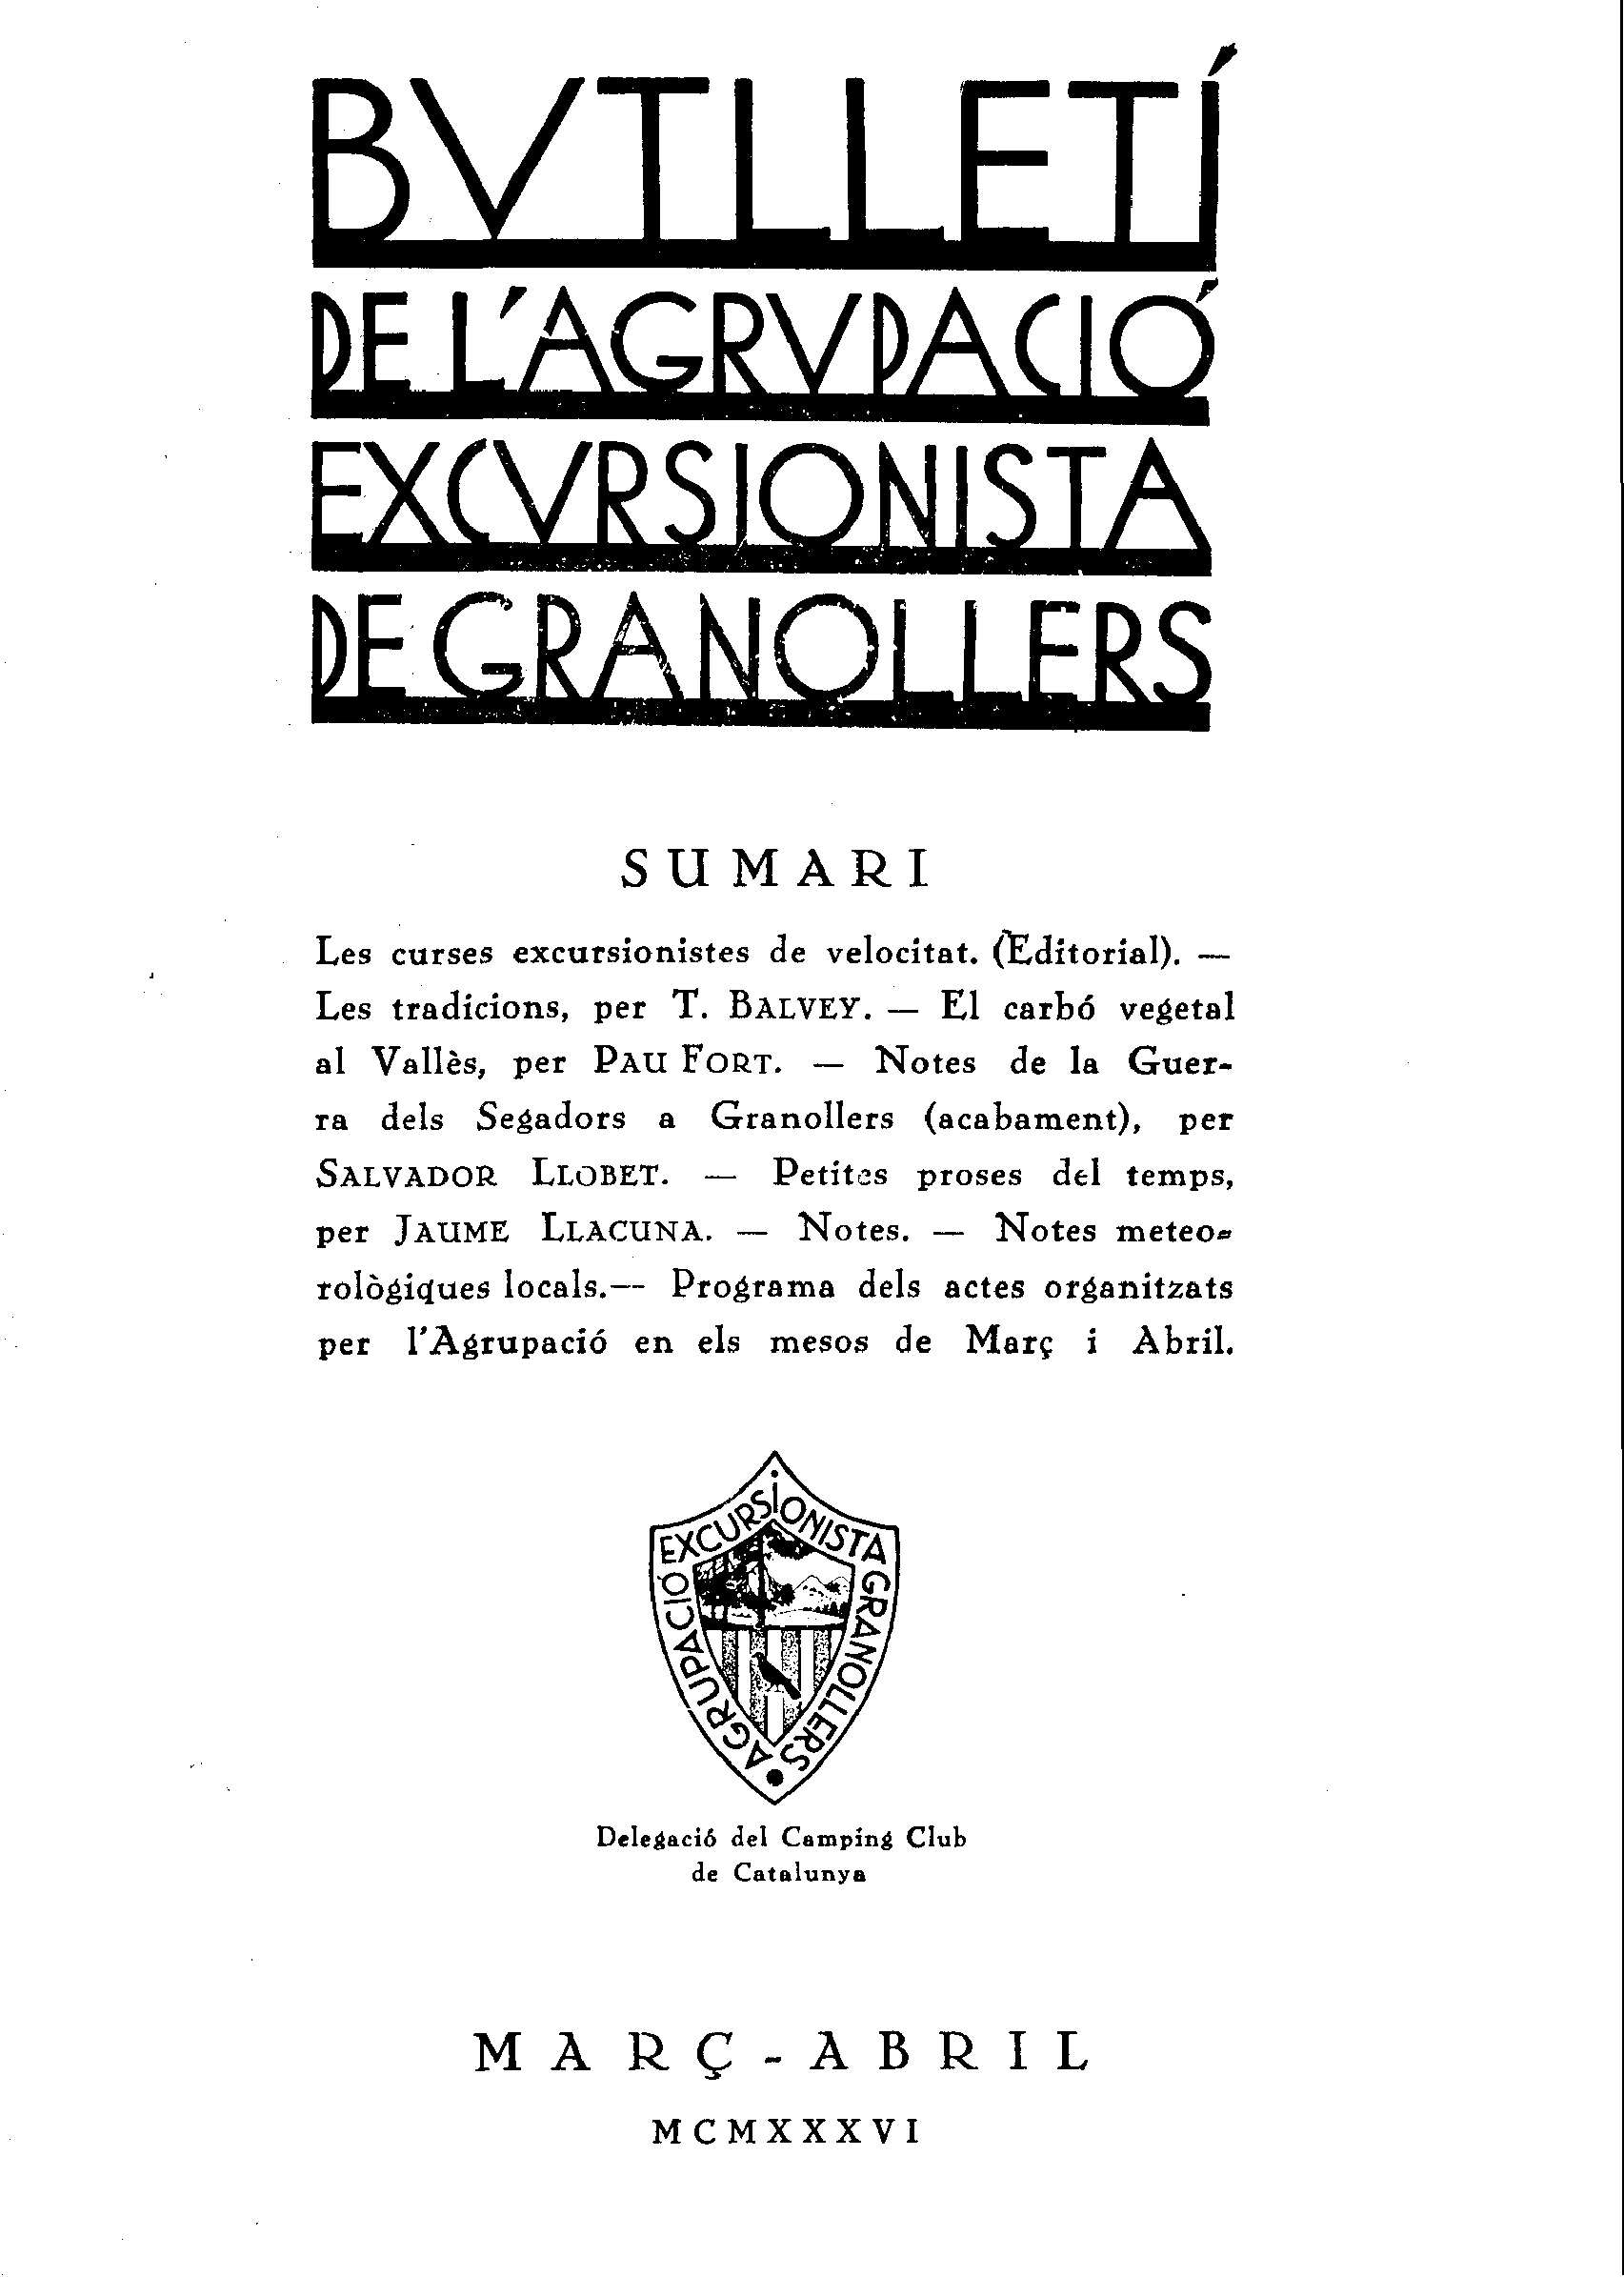 Butlletí de l'Agrupació Excursionista de Granollers, 1/3/1936 [Ejemplar]